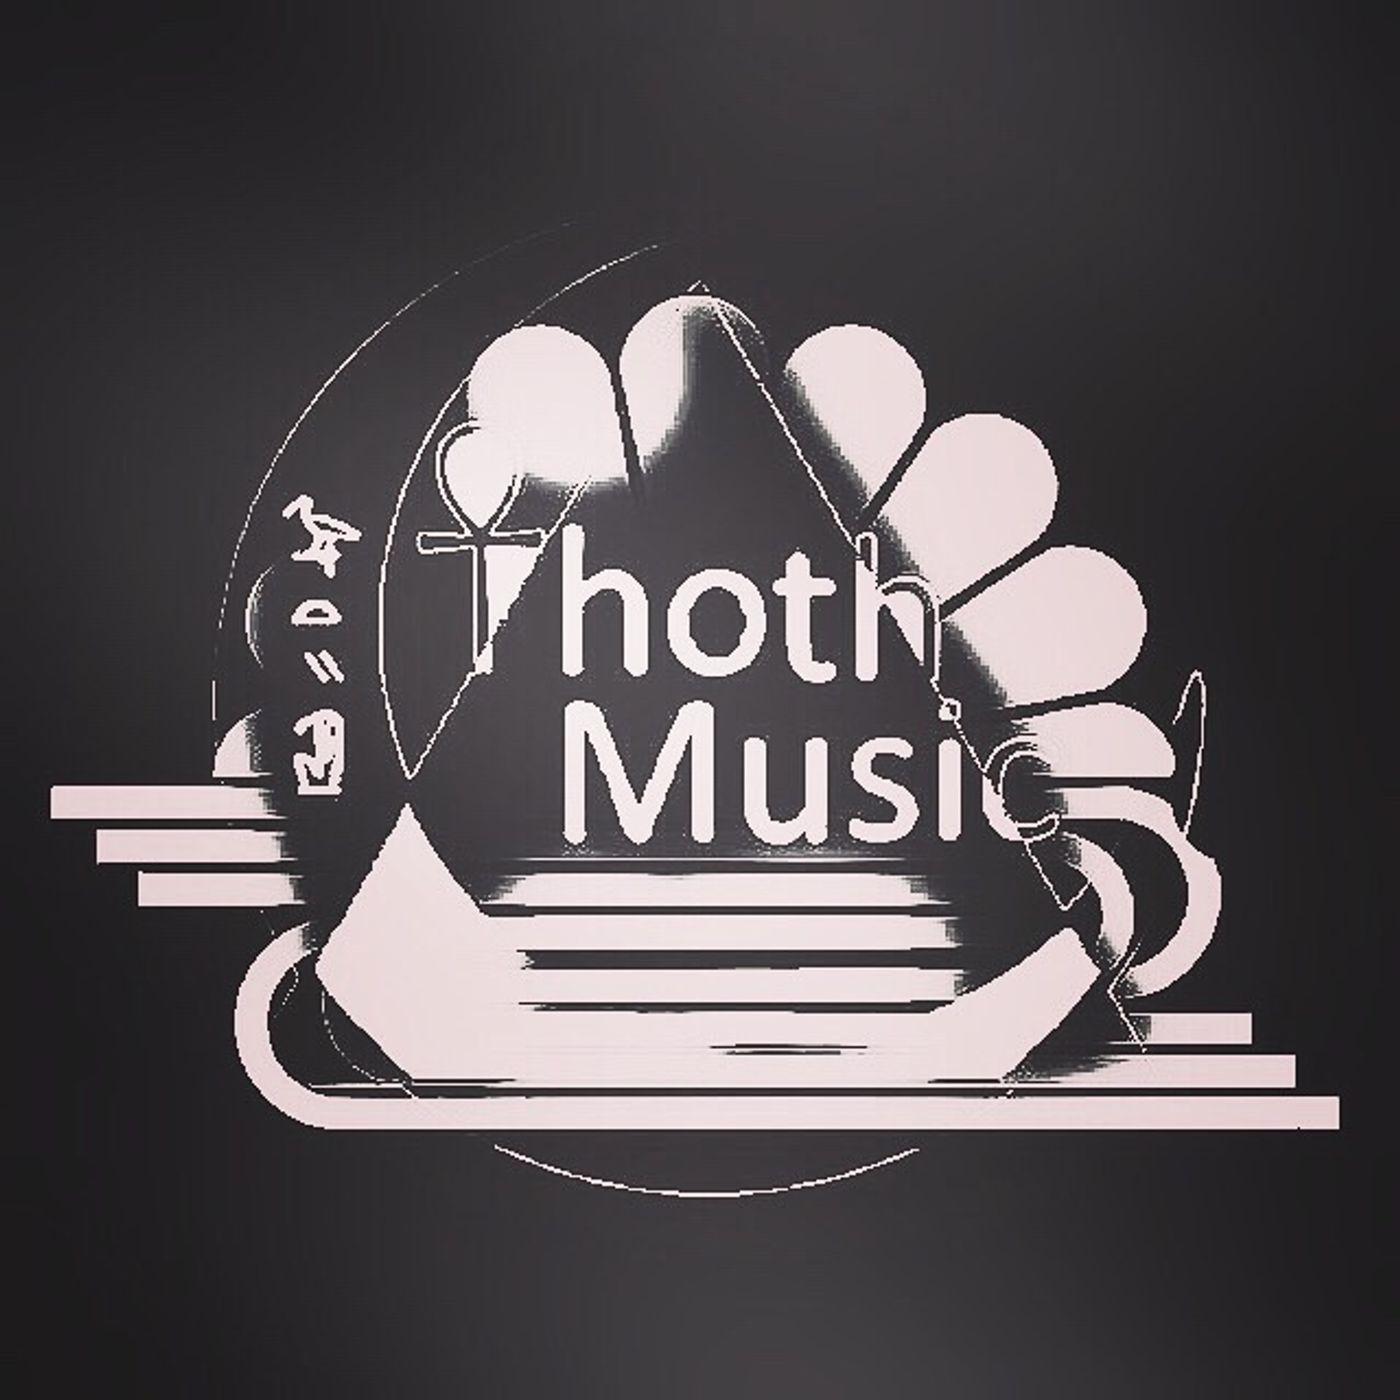 SUMOMO DoJo  On That Thoth Music  :) ⚗️#NewMusic #Spotify